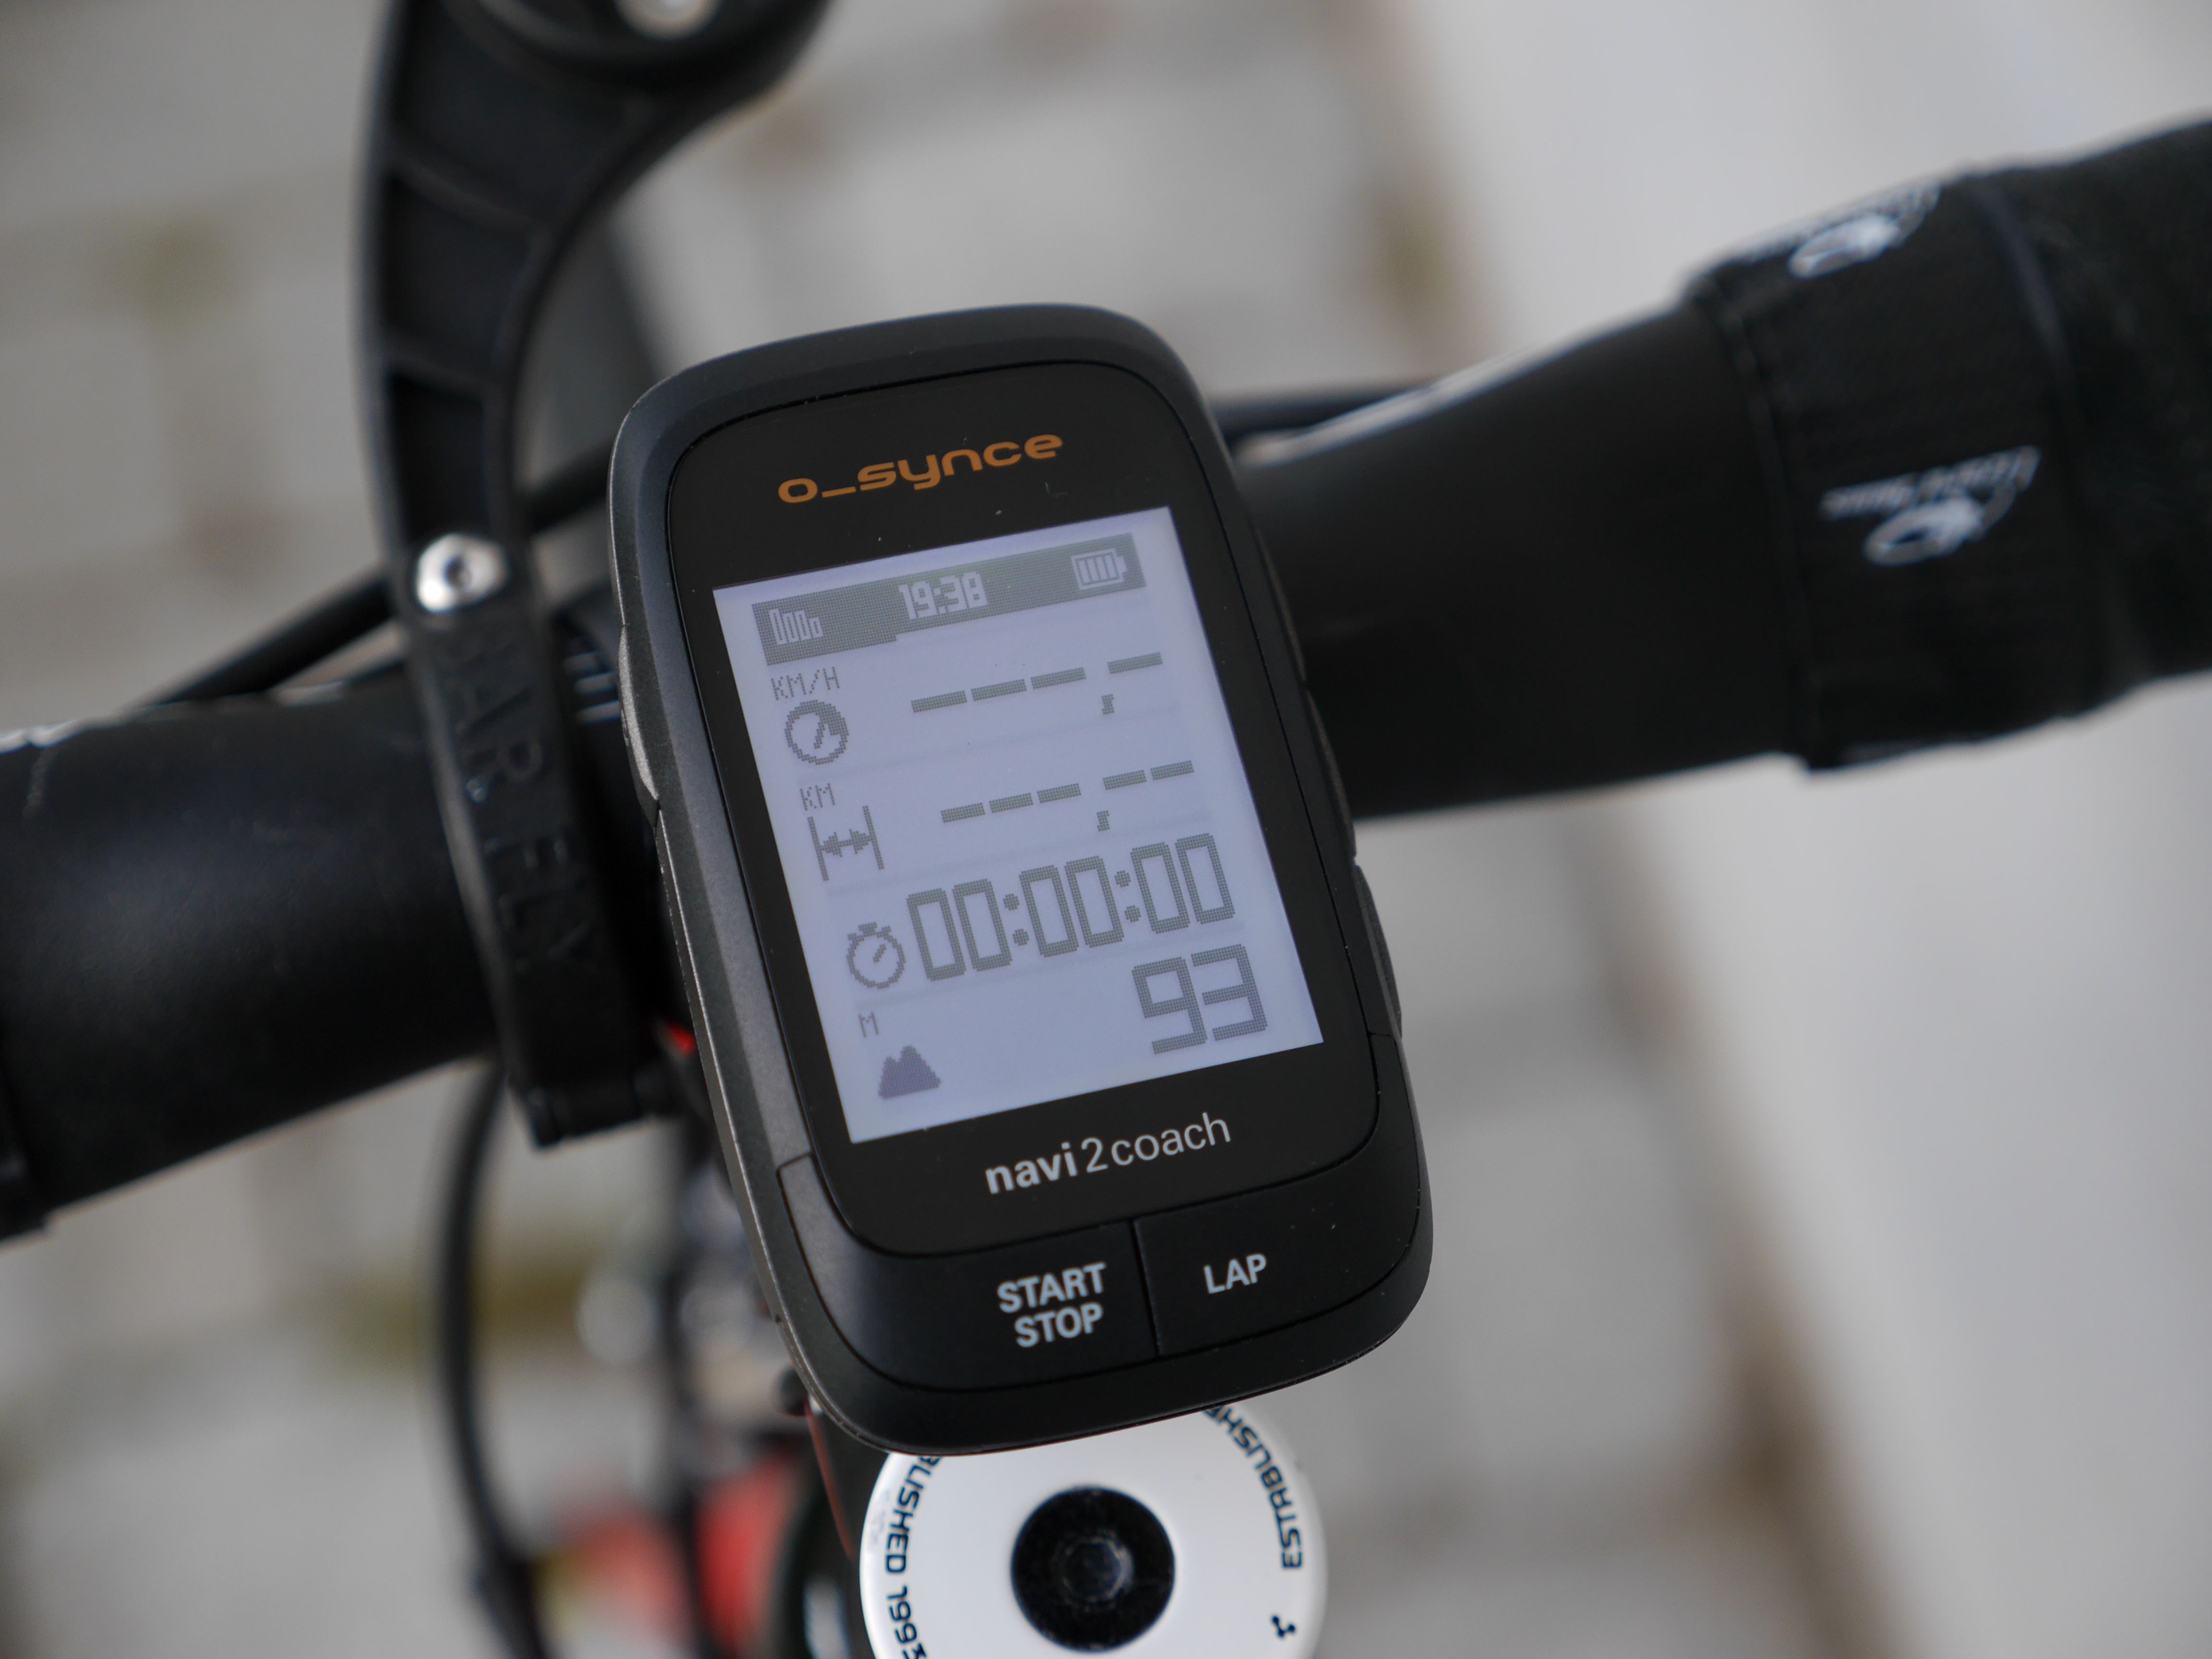 Oxide Indvandring Due Test: O_Synce Navi2coach cykel GPS | CykelStart.dk